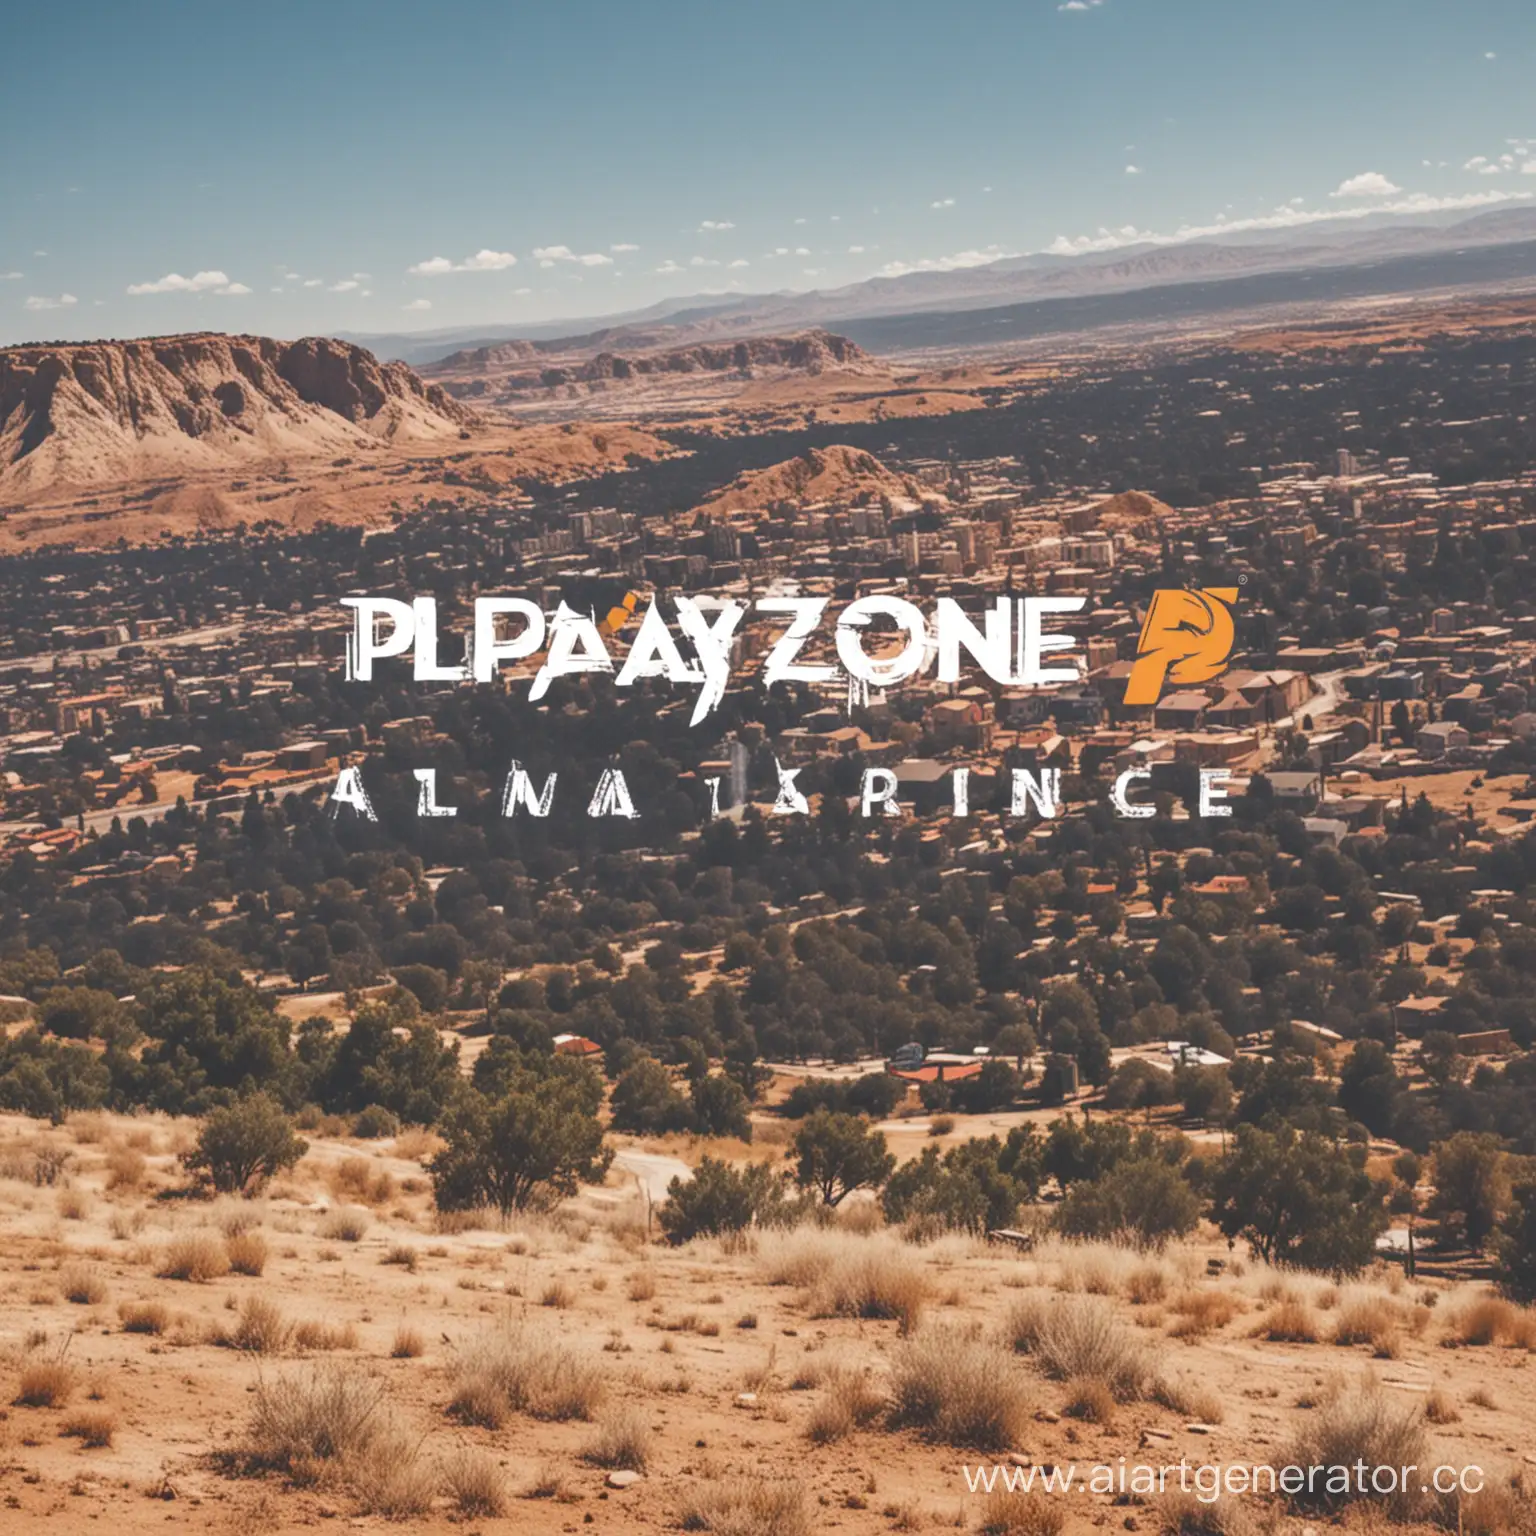 PlayZone Alliance
